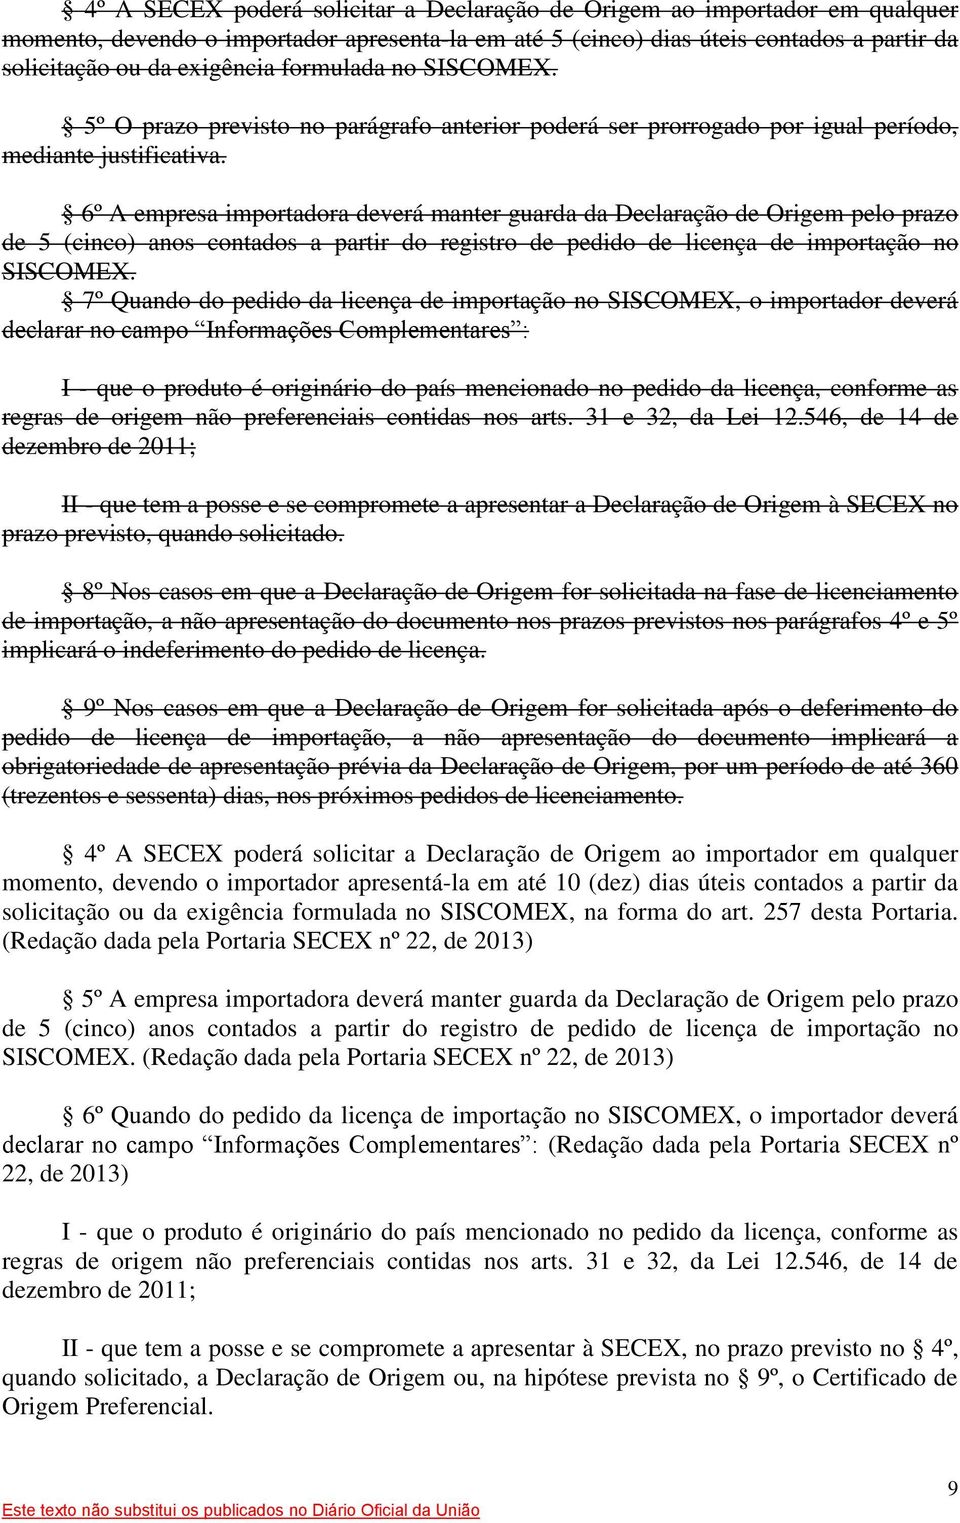 6º A empresa importadora deverá manter guarda da Declaração de Origem pelo prazo de 5 (cinco) anos contados a partir do registro de pedido de licença de importação no SISCOMEX.